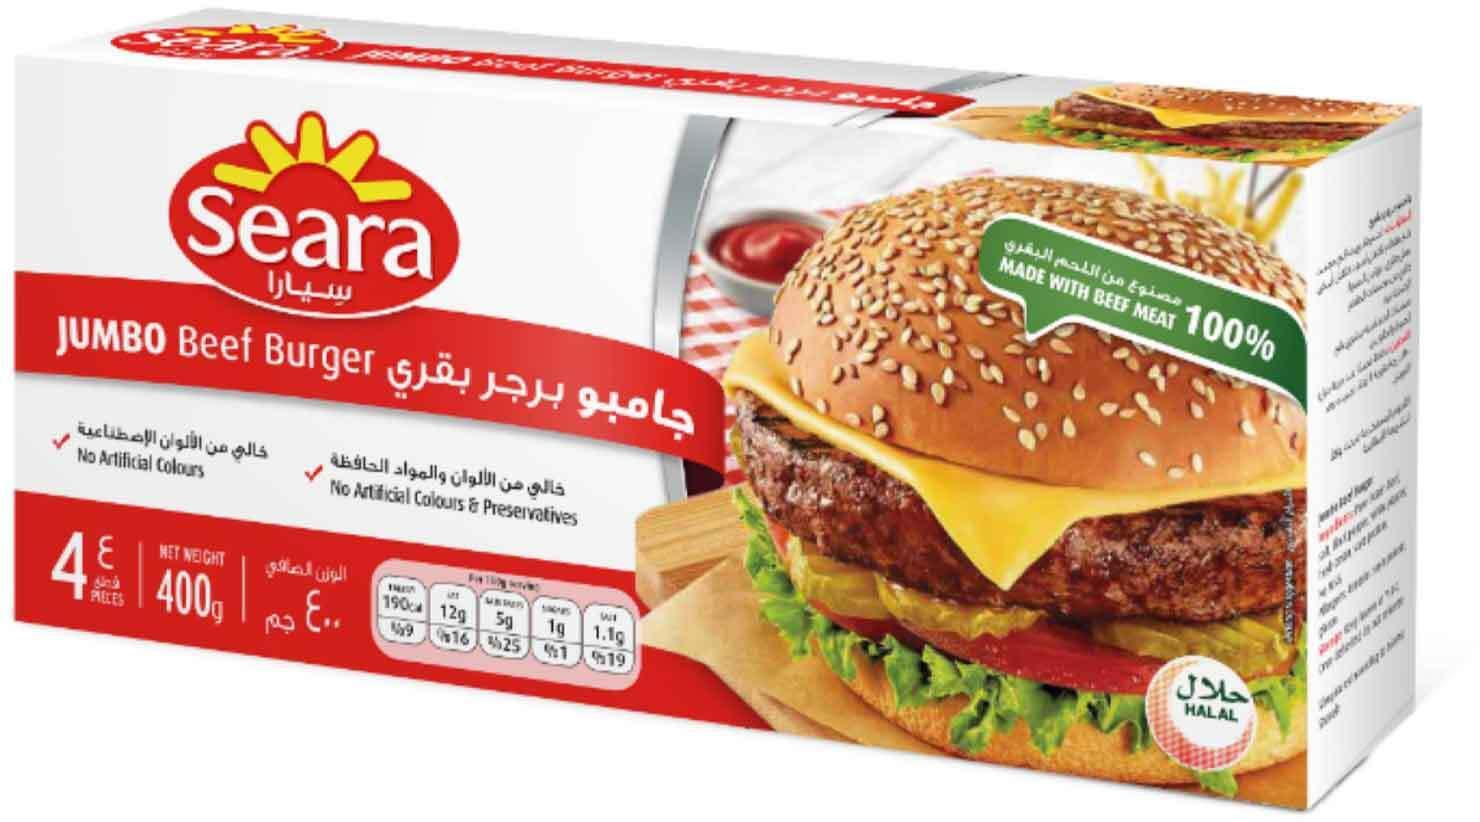 Seara beef burger jumbo 400g